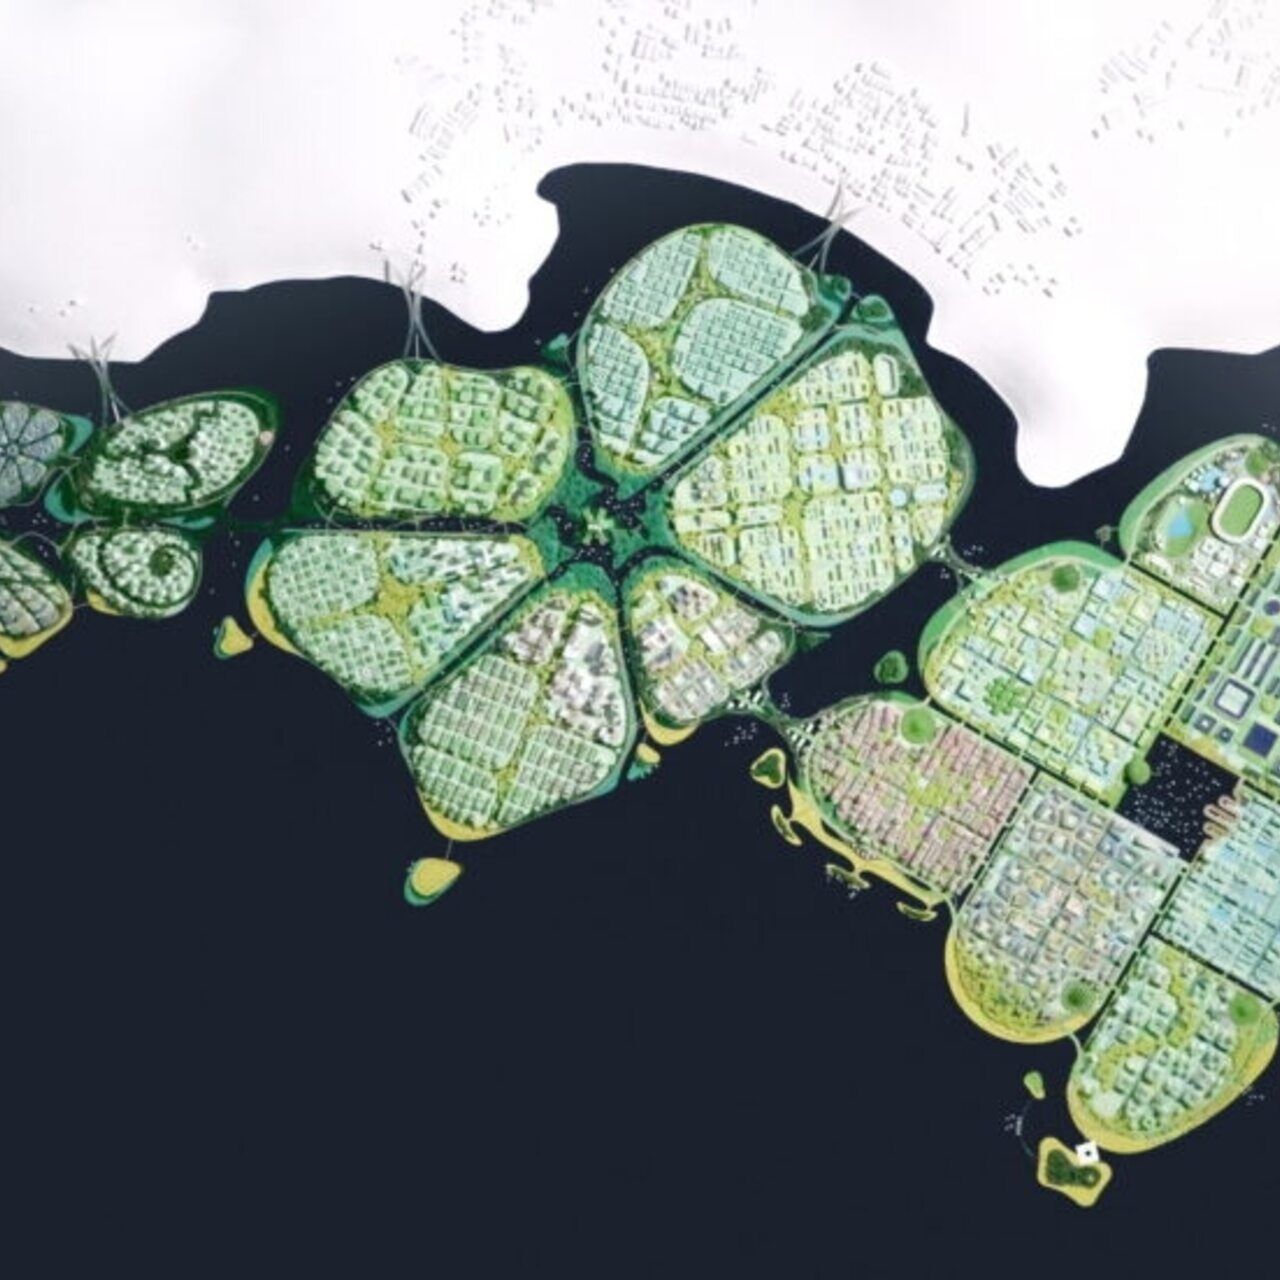 BiodiverCity: аэрофотосъемка трех островов: каналов, мангровых зарослей и лагуны, которые сформируют инновационный и устойчивый город BiodiverCity в 2030 году в Малайзии недалеко от Пенанга.